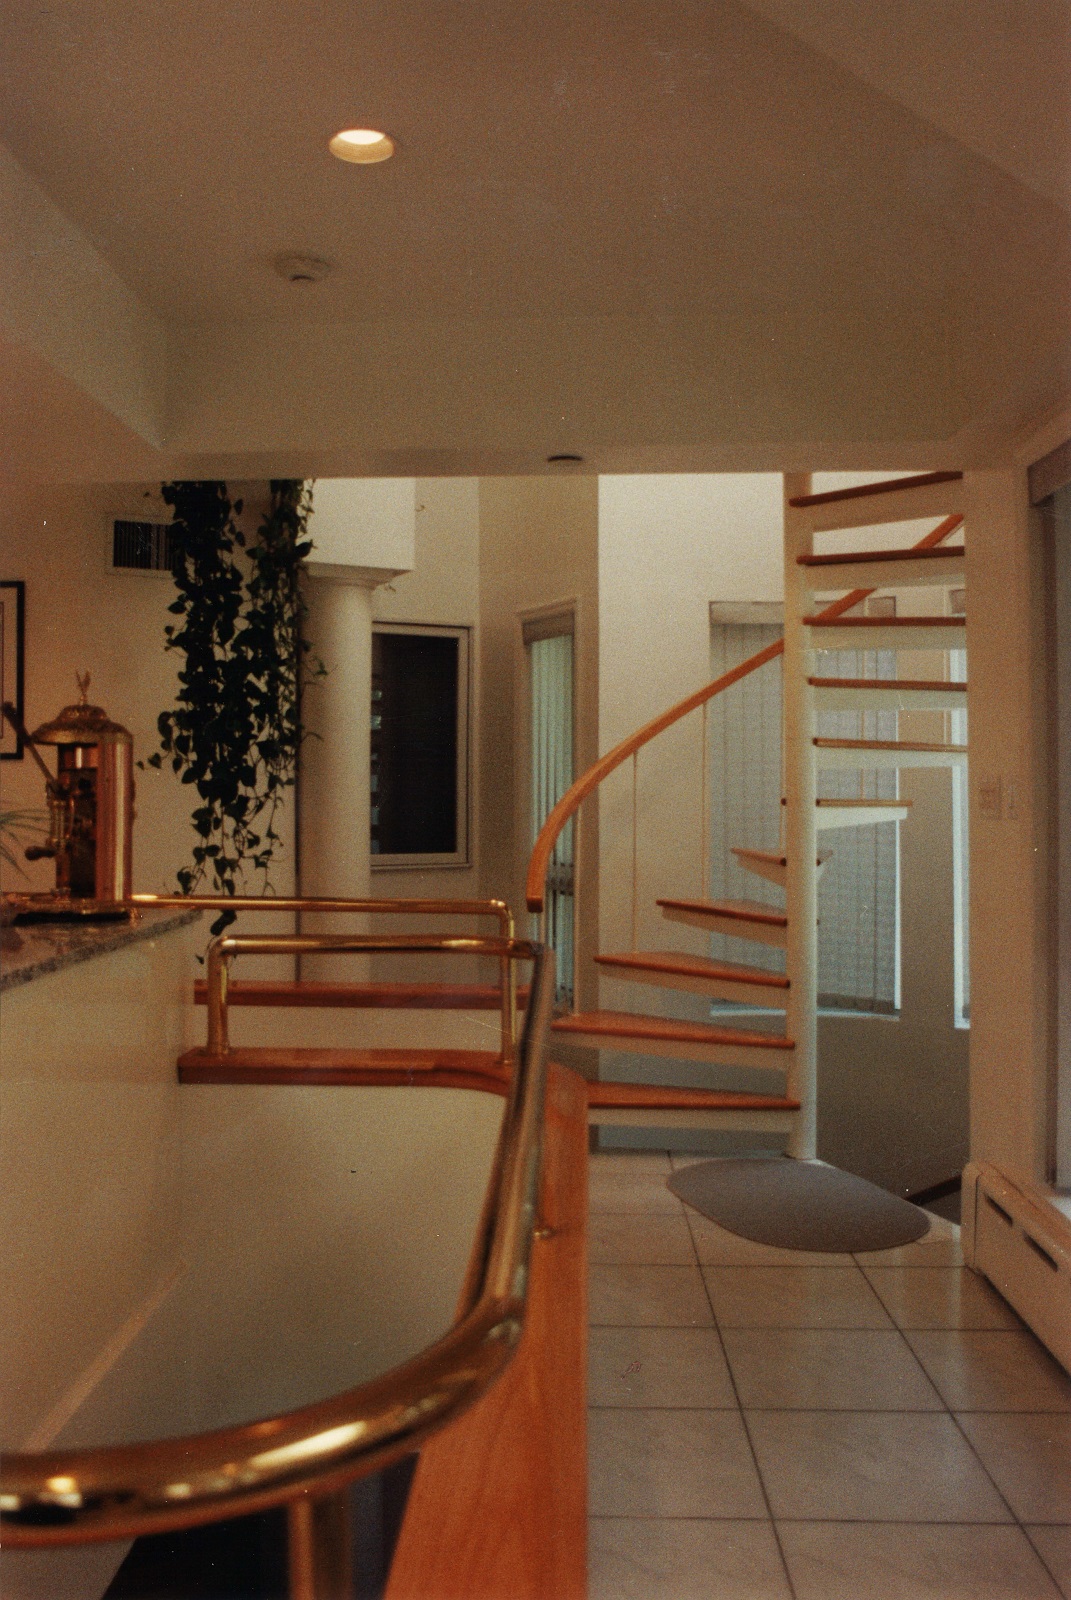 Second floor walkway to bedrooms.